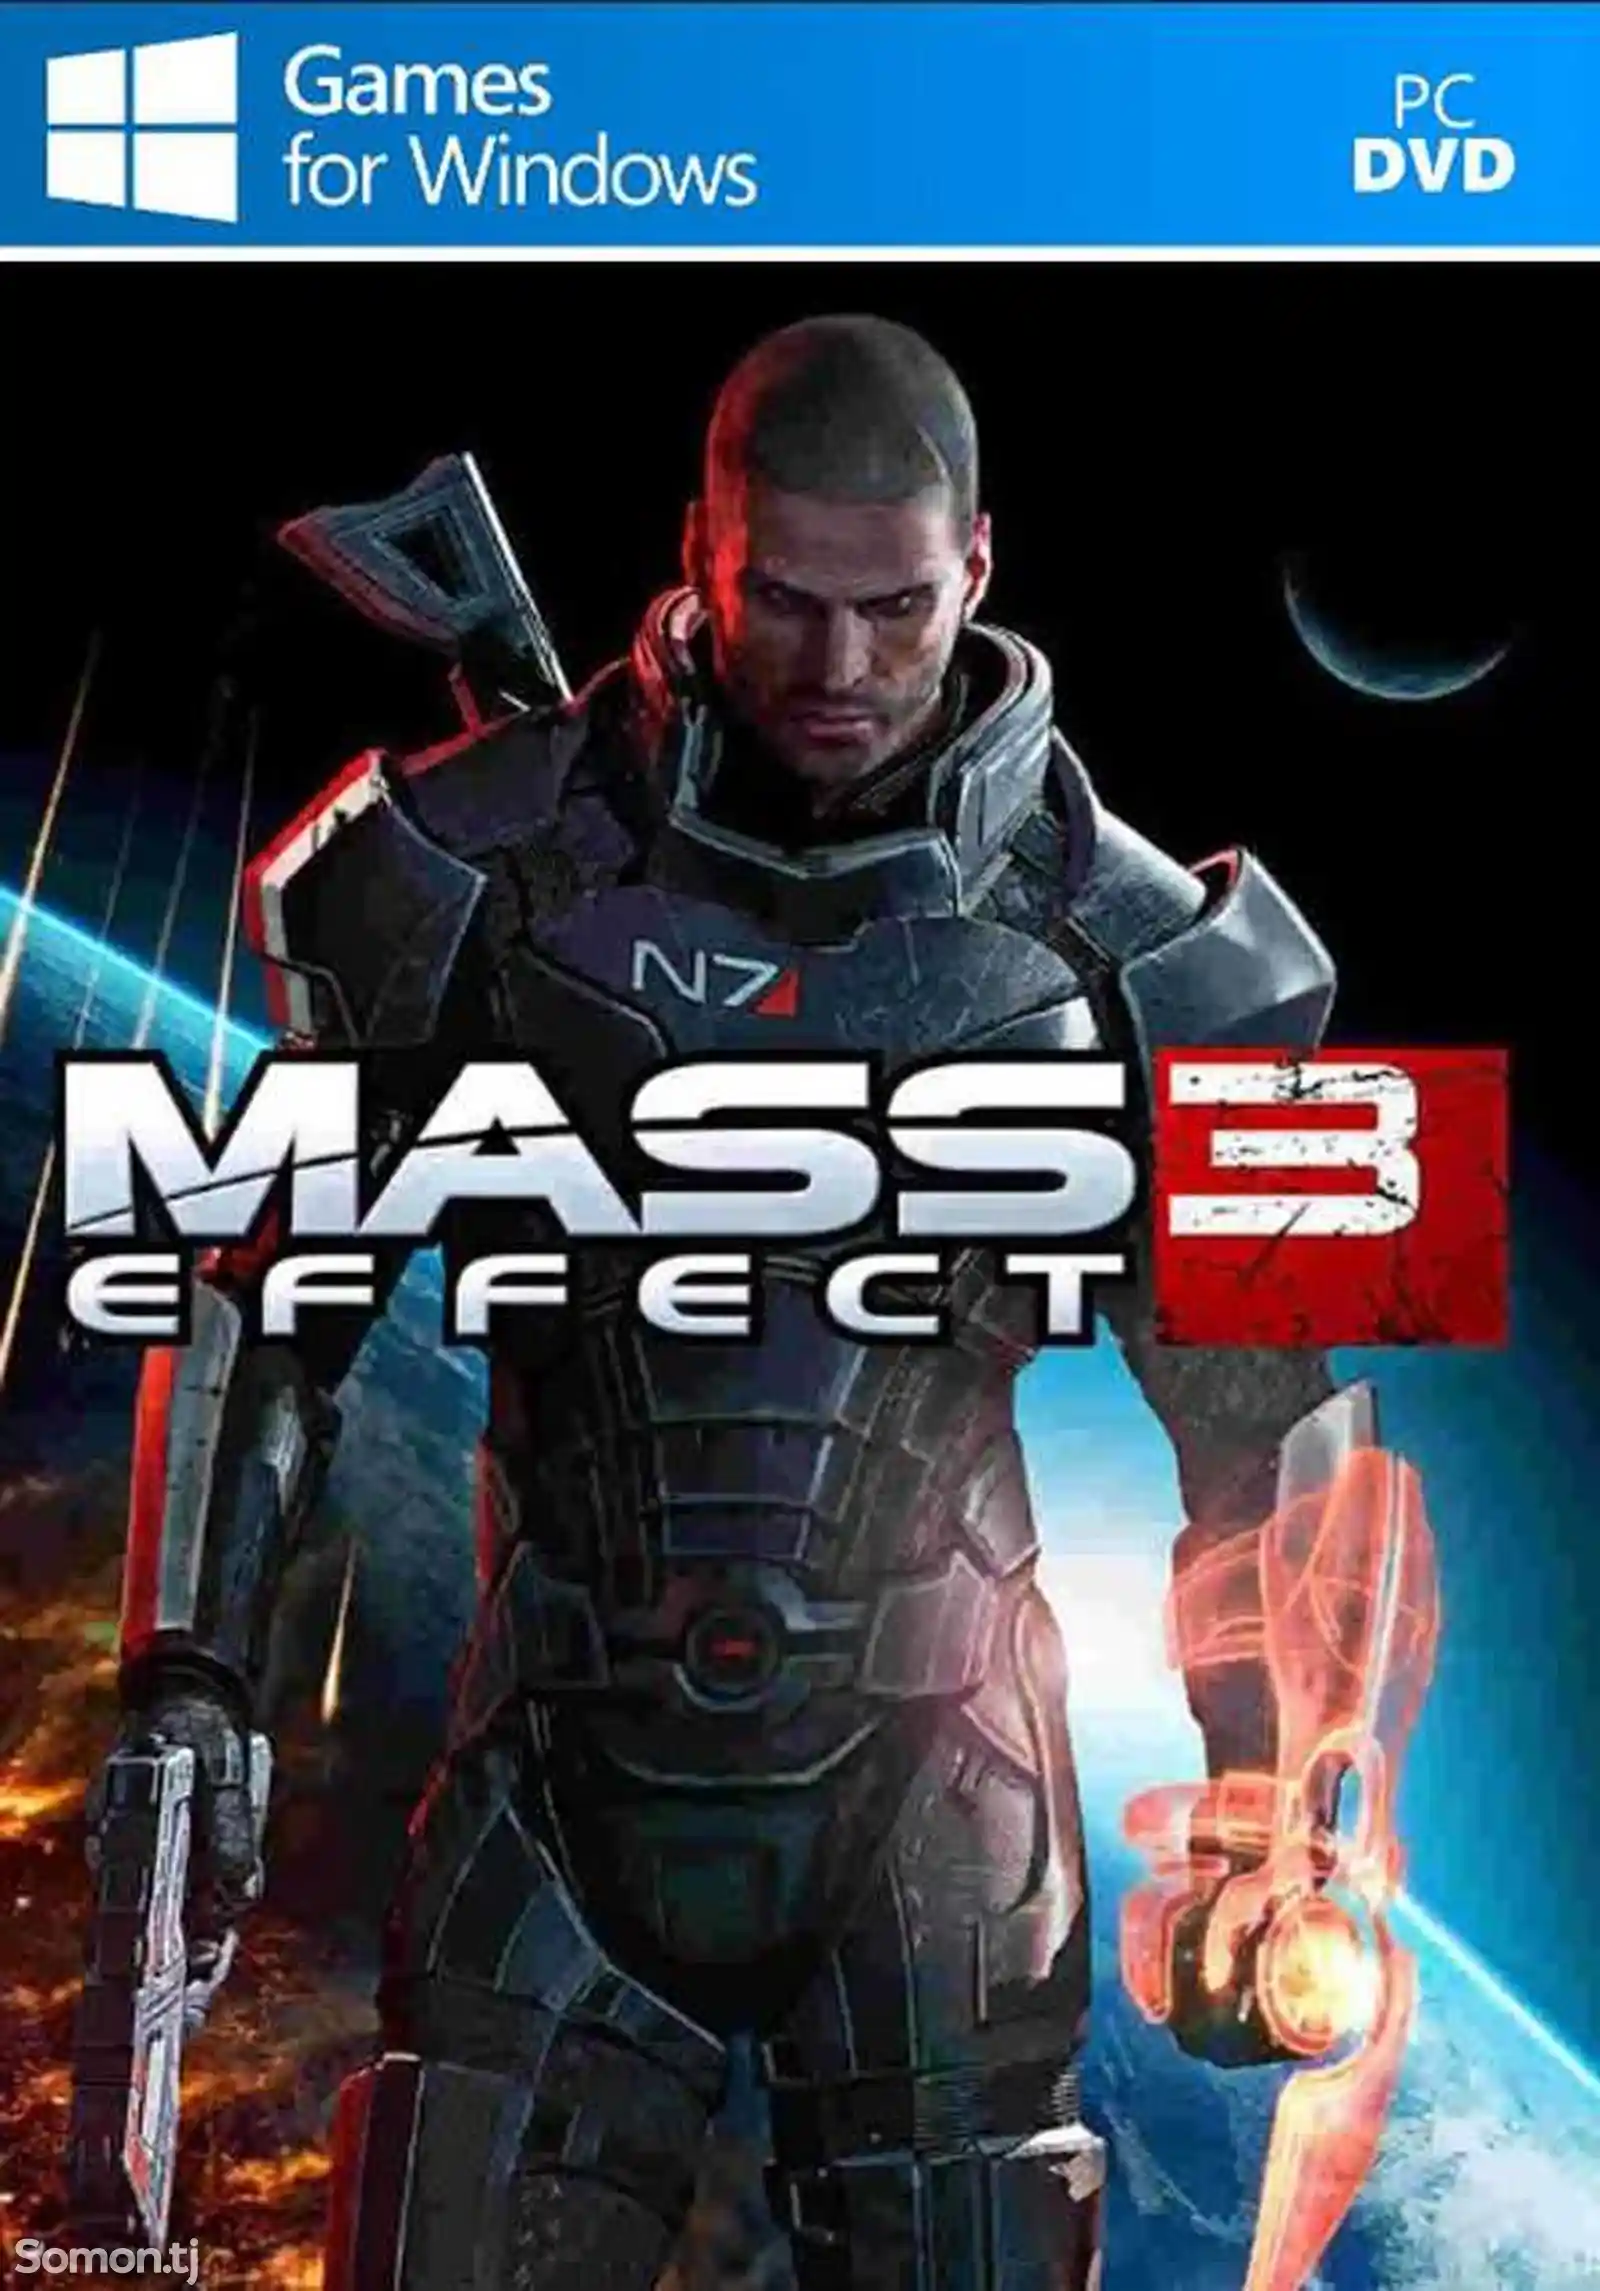 Игра Mass effect 3 для компьютера-пк-pc-1